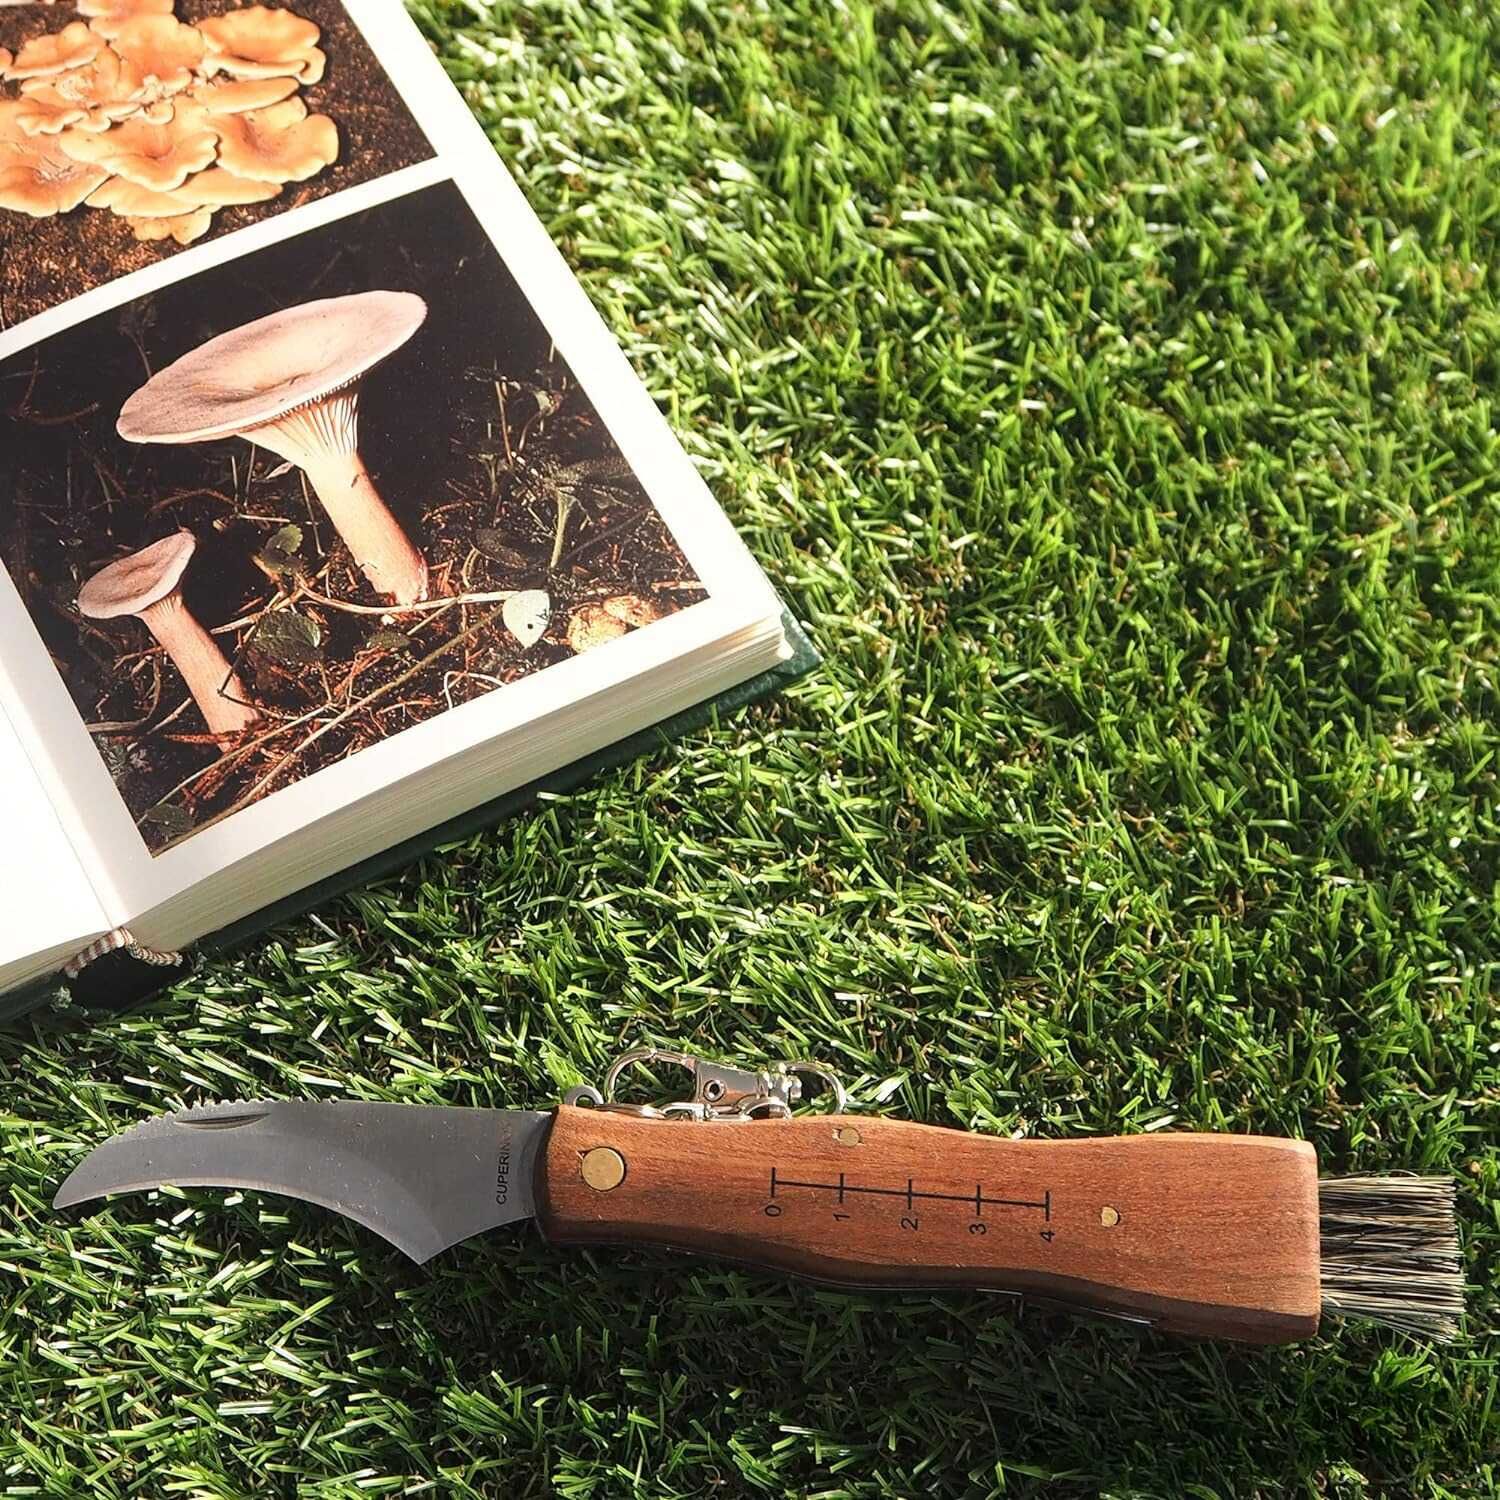 Faca-Navalha-Canivete para Colheita de Cogumelos c/ Pinça para Limpeza